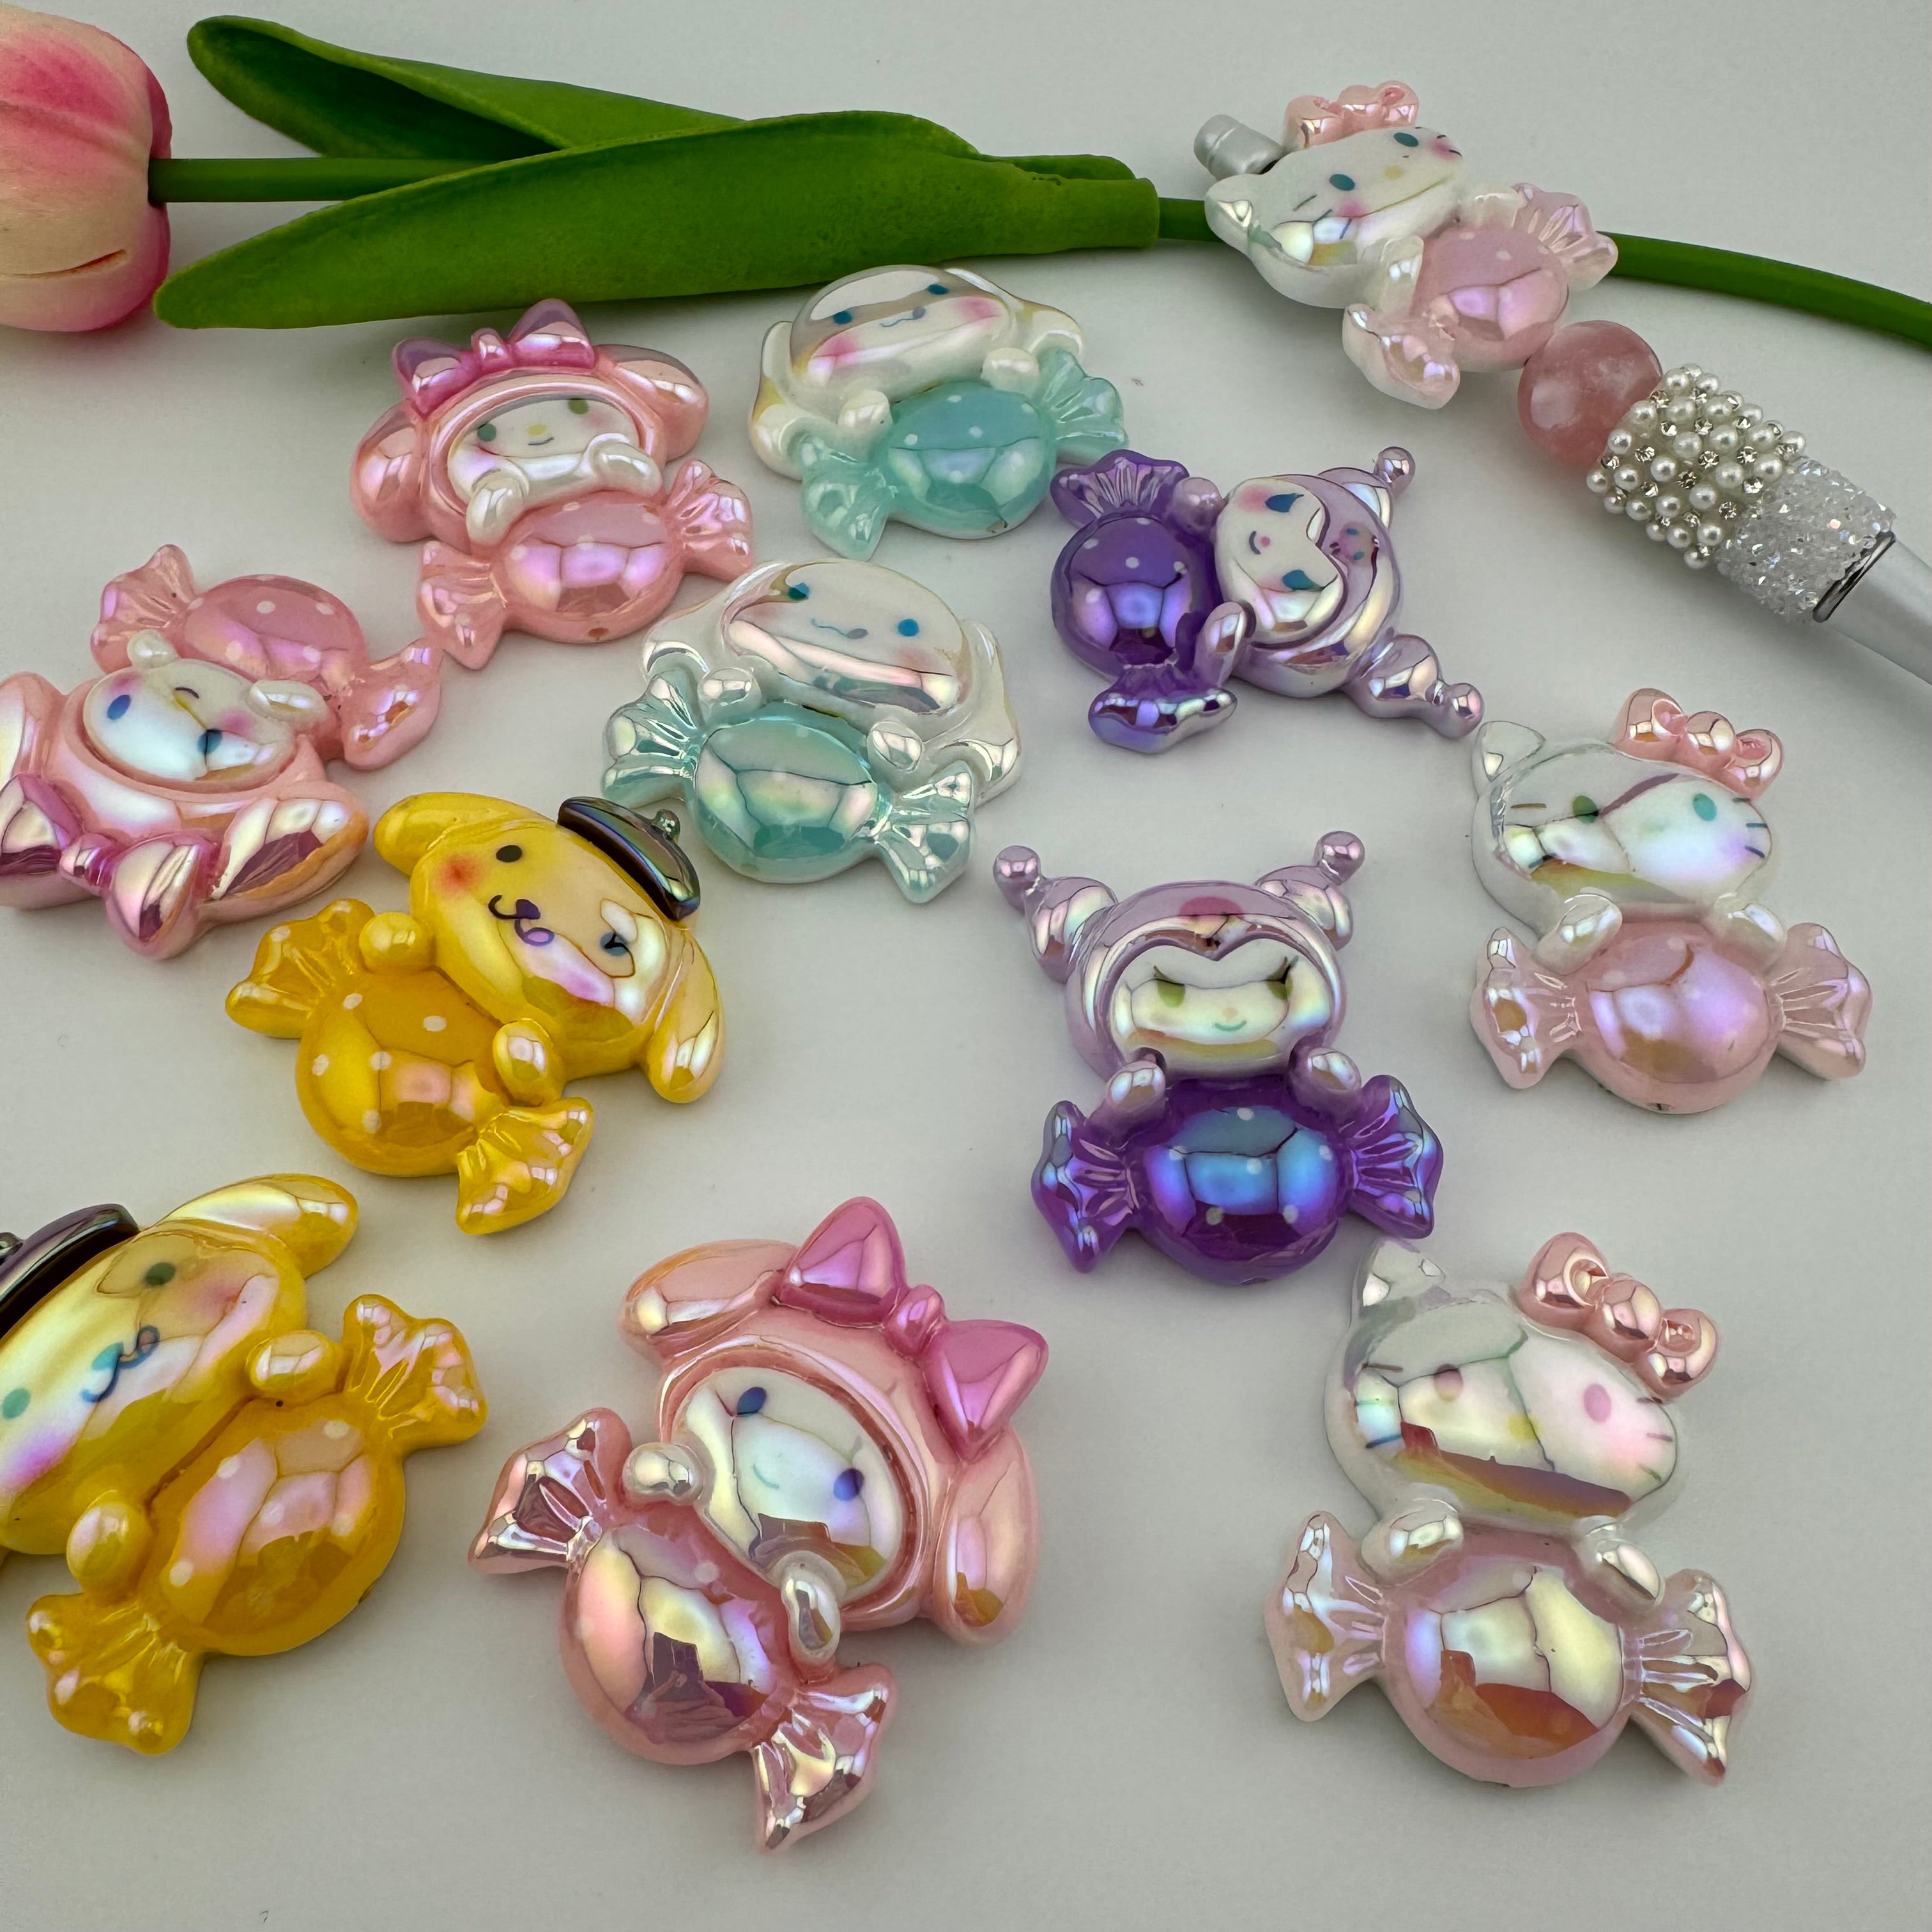 10 Pieces Mixed Color Sanrio Resin Beads